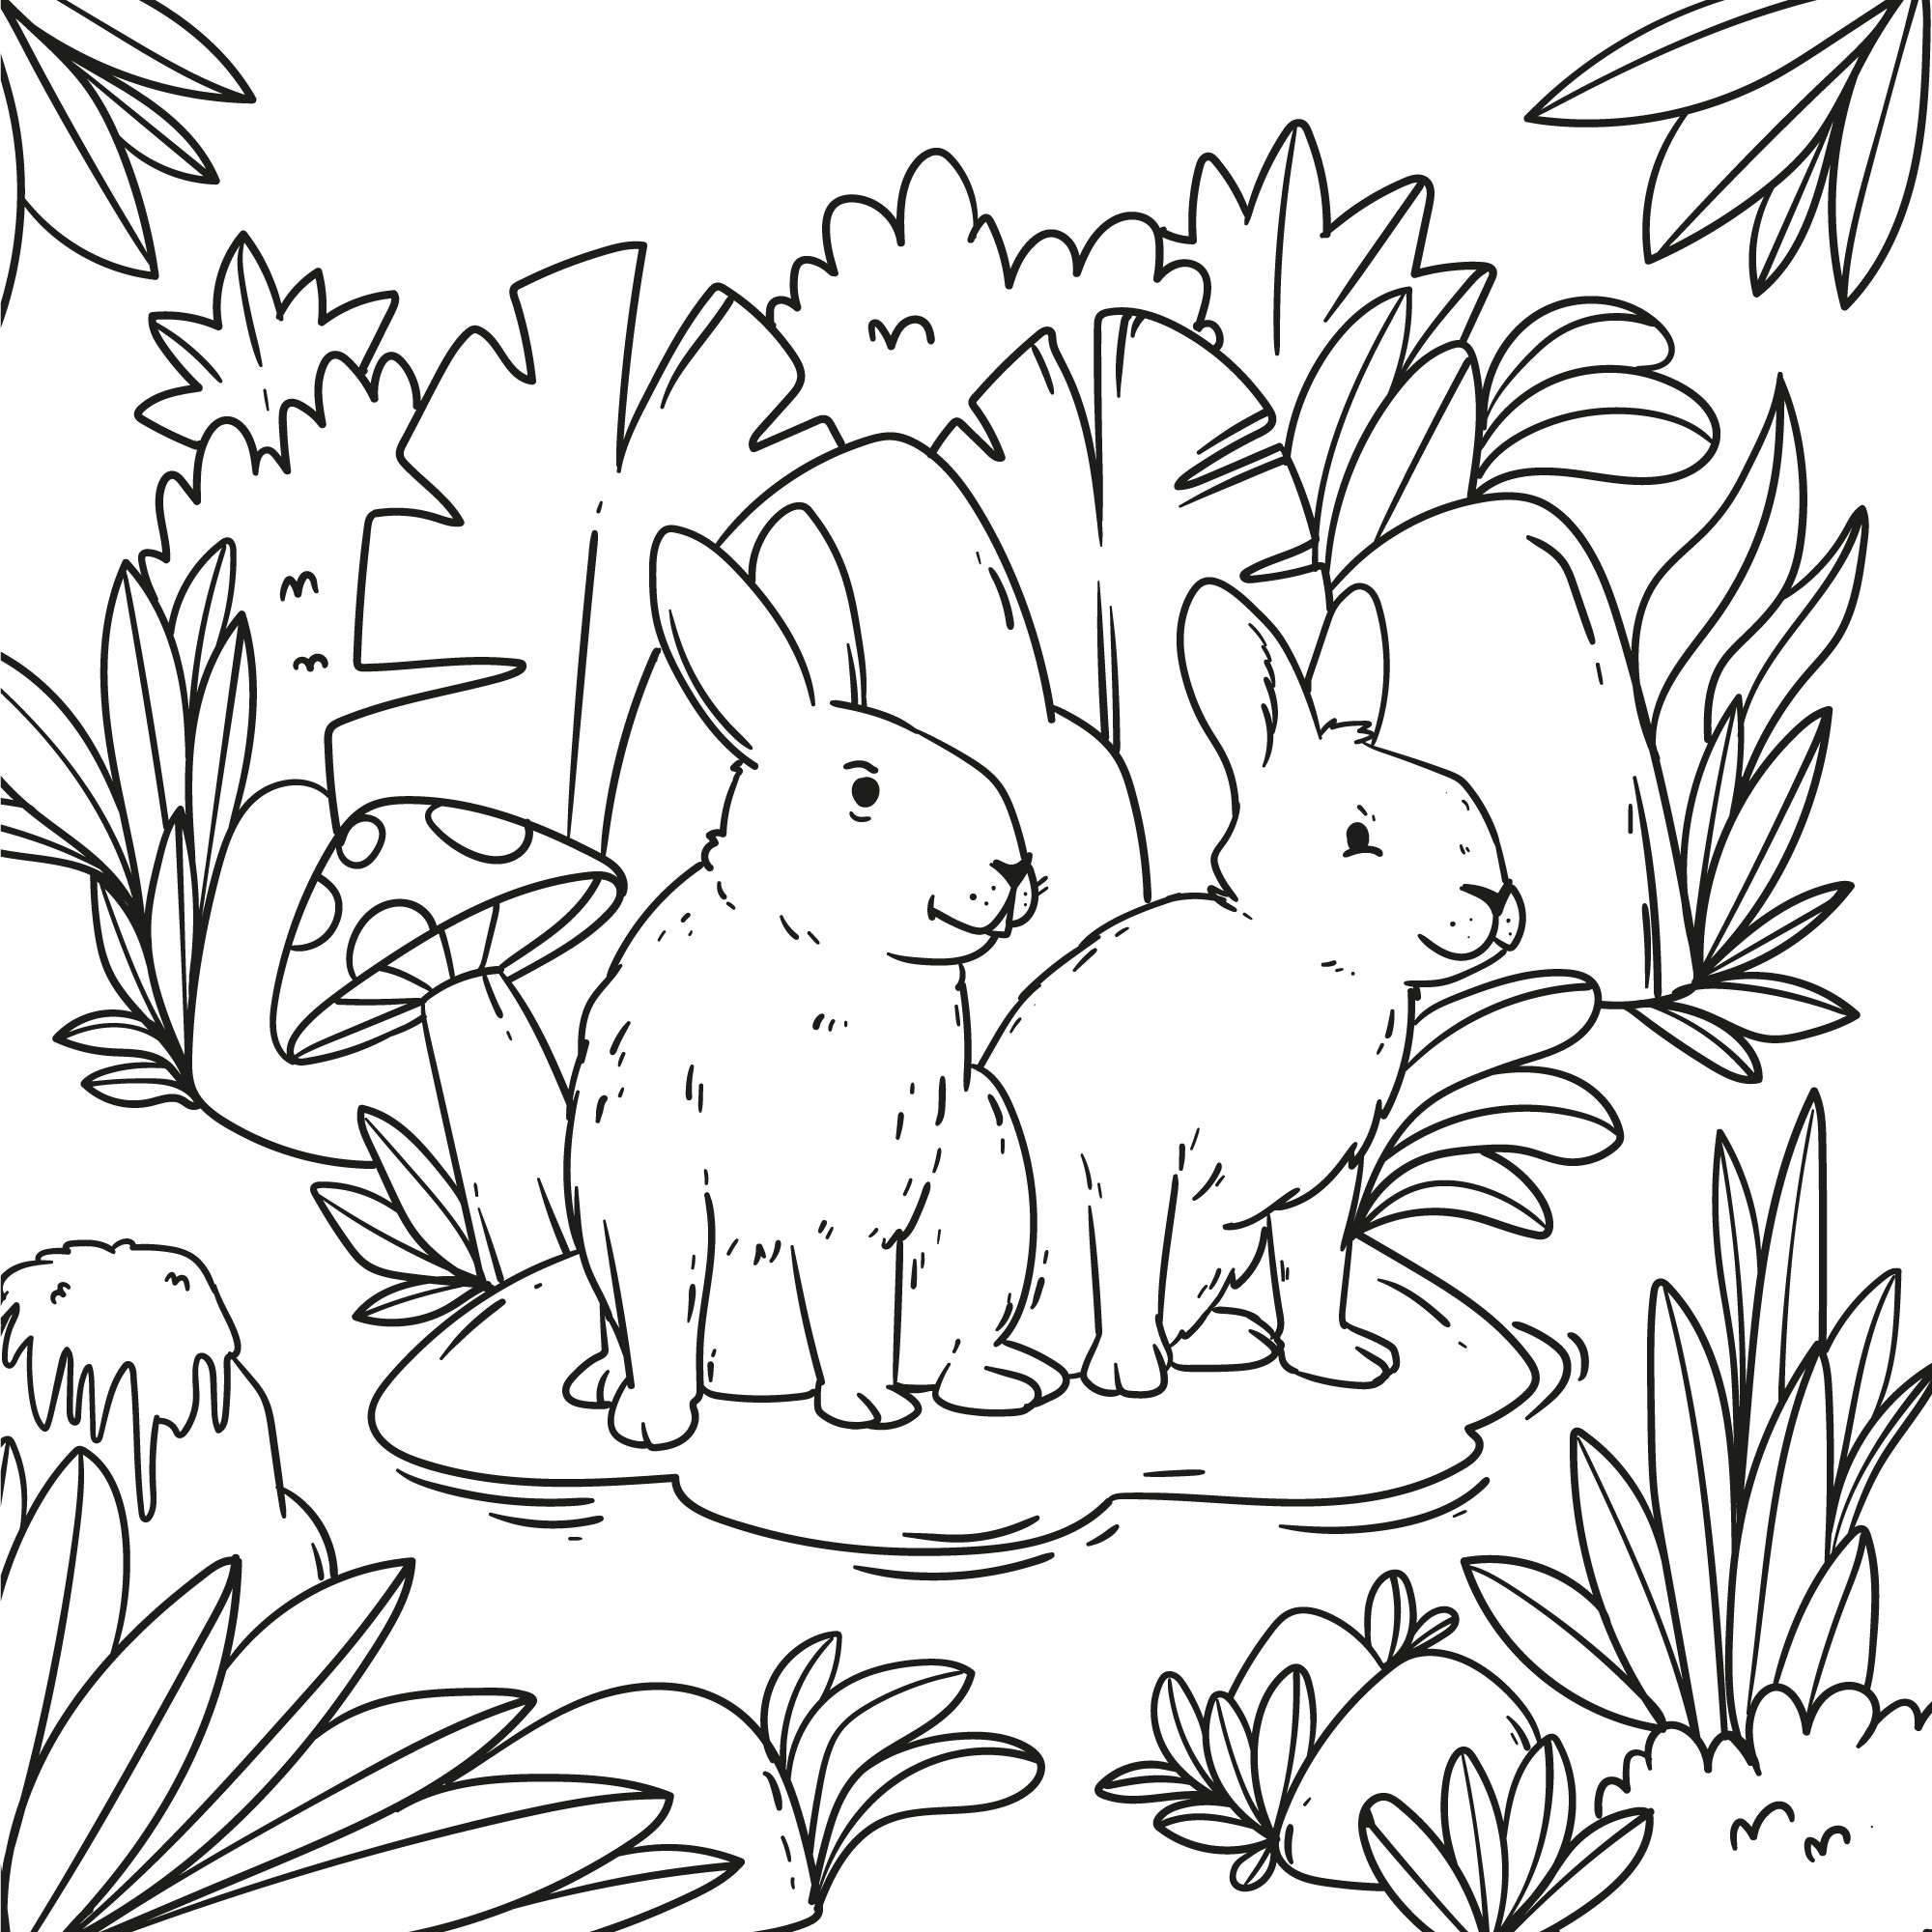 Раскраска для детей: зайцы на опушке с грибом